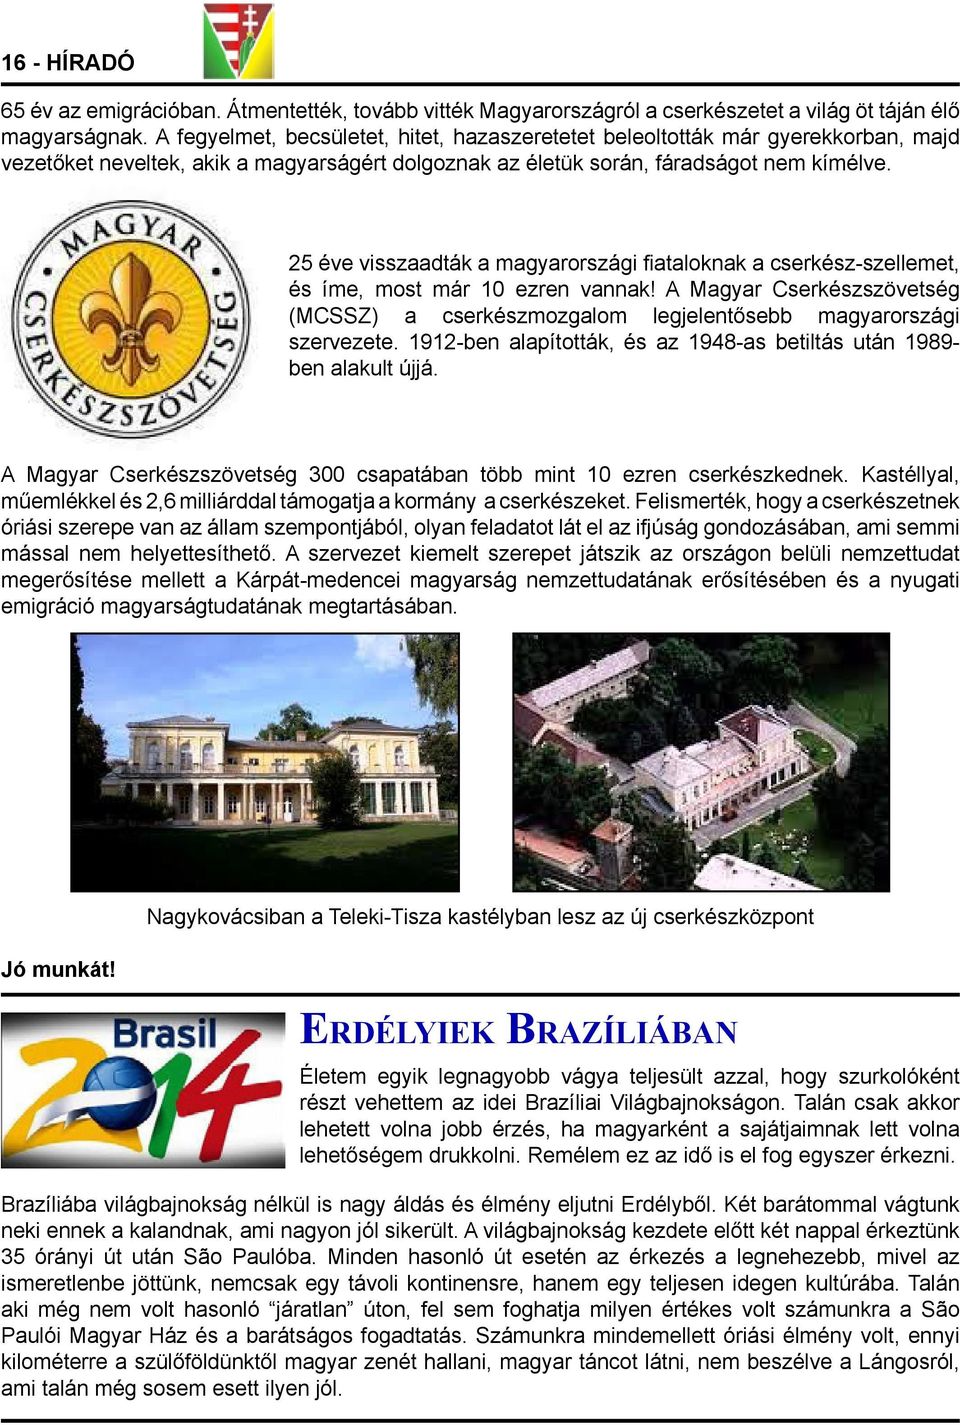 25 éve visszaadták a magyarországi fiataloknak a cserkész-szellemet, és íme, most már 10 ezren vannak! A Magyar Cserkészszövetség (MCSSZ) a cserkészmozgalom legjelentősebb magyarországi szervezete.